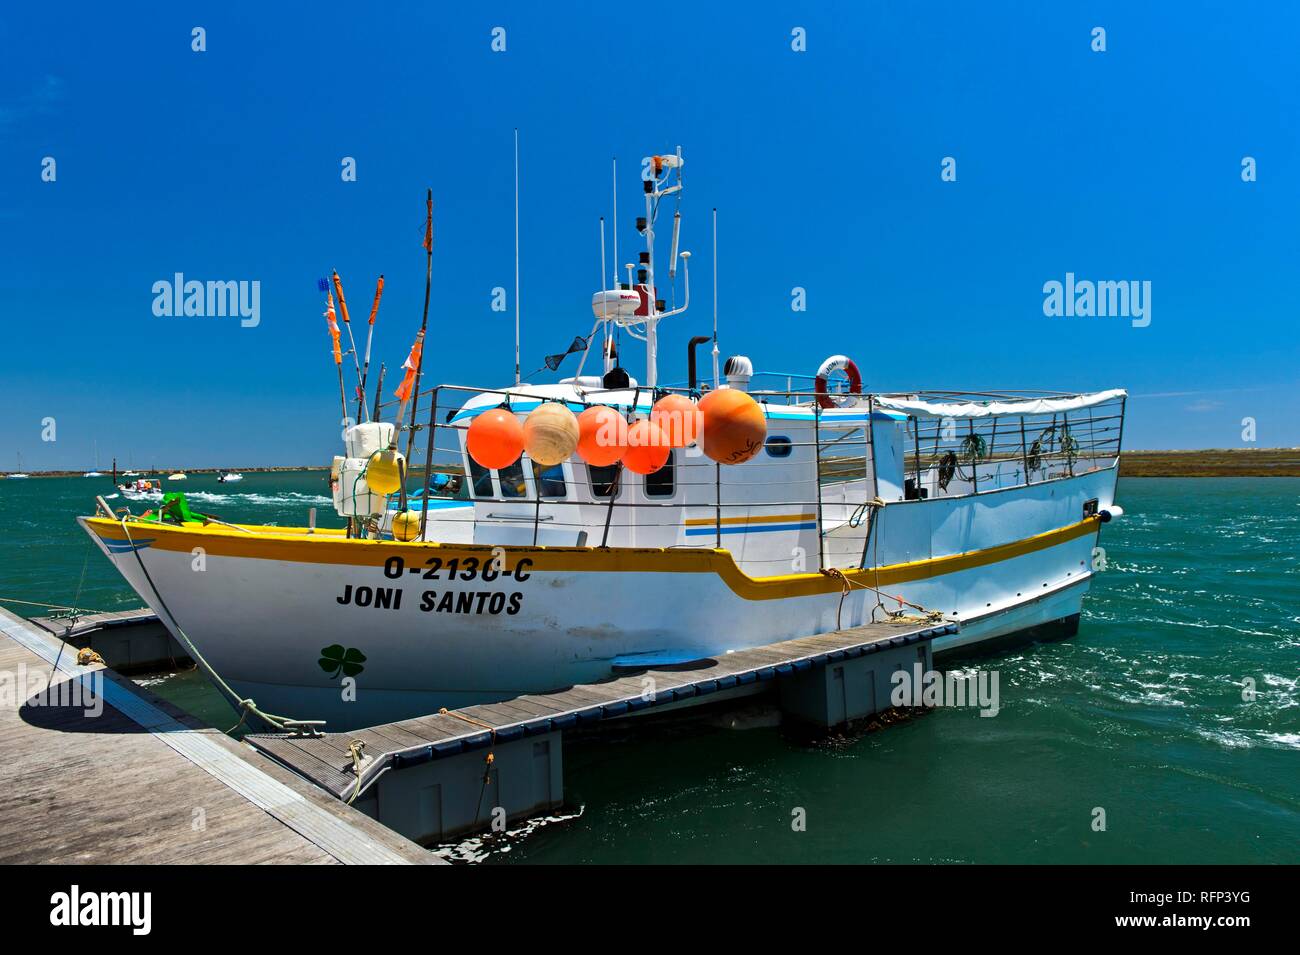 Fishing boat in the port of Santa Luzia, Algarve, Portugal Stock Photo